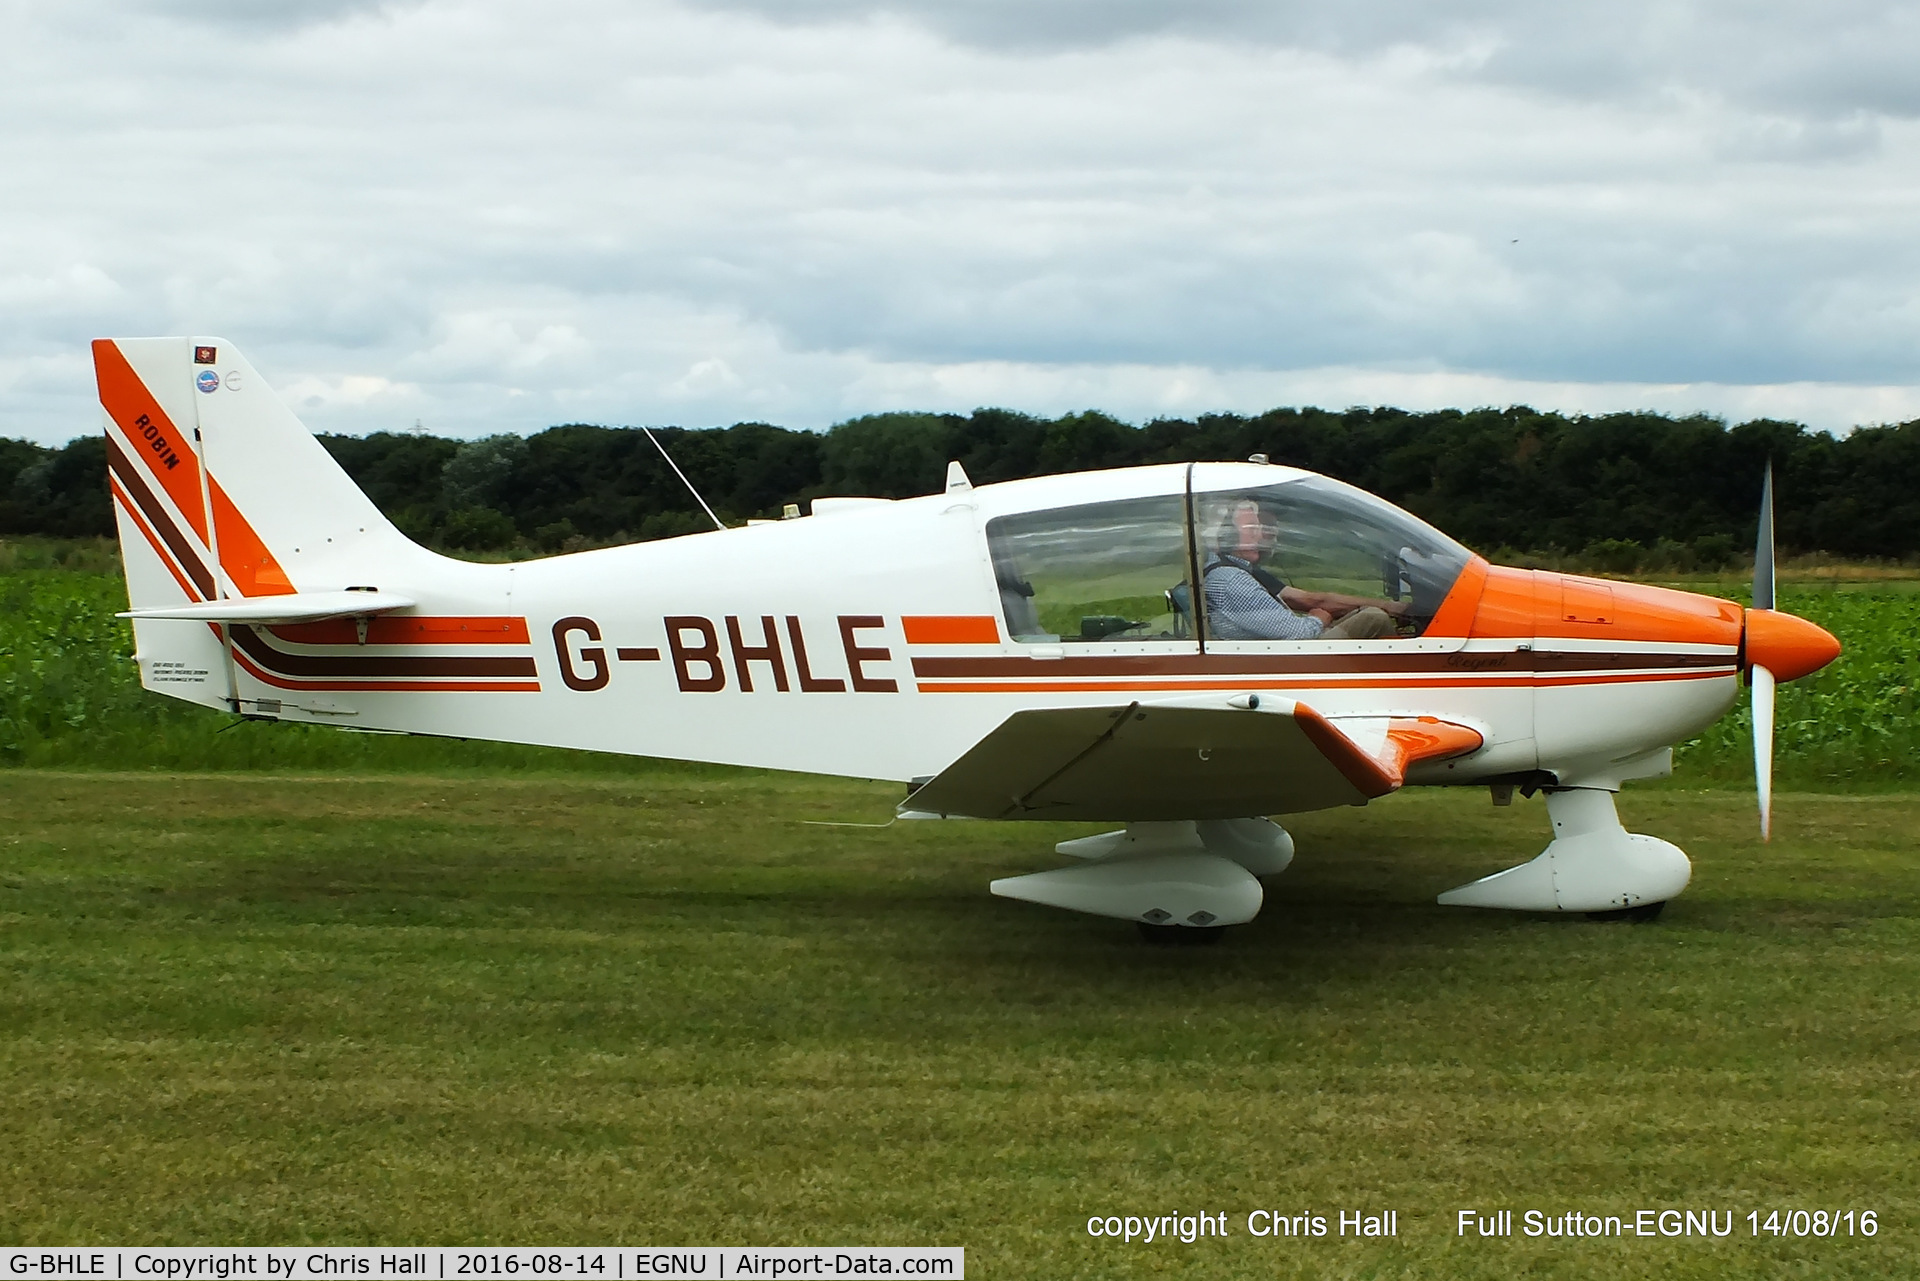 G-BHLE, 1980 Robin DR-400-180 Regent Regent C/N 1466, at the LAA Vale of York Strut fly-in, Full Sutton